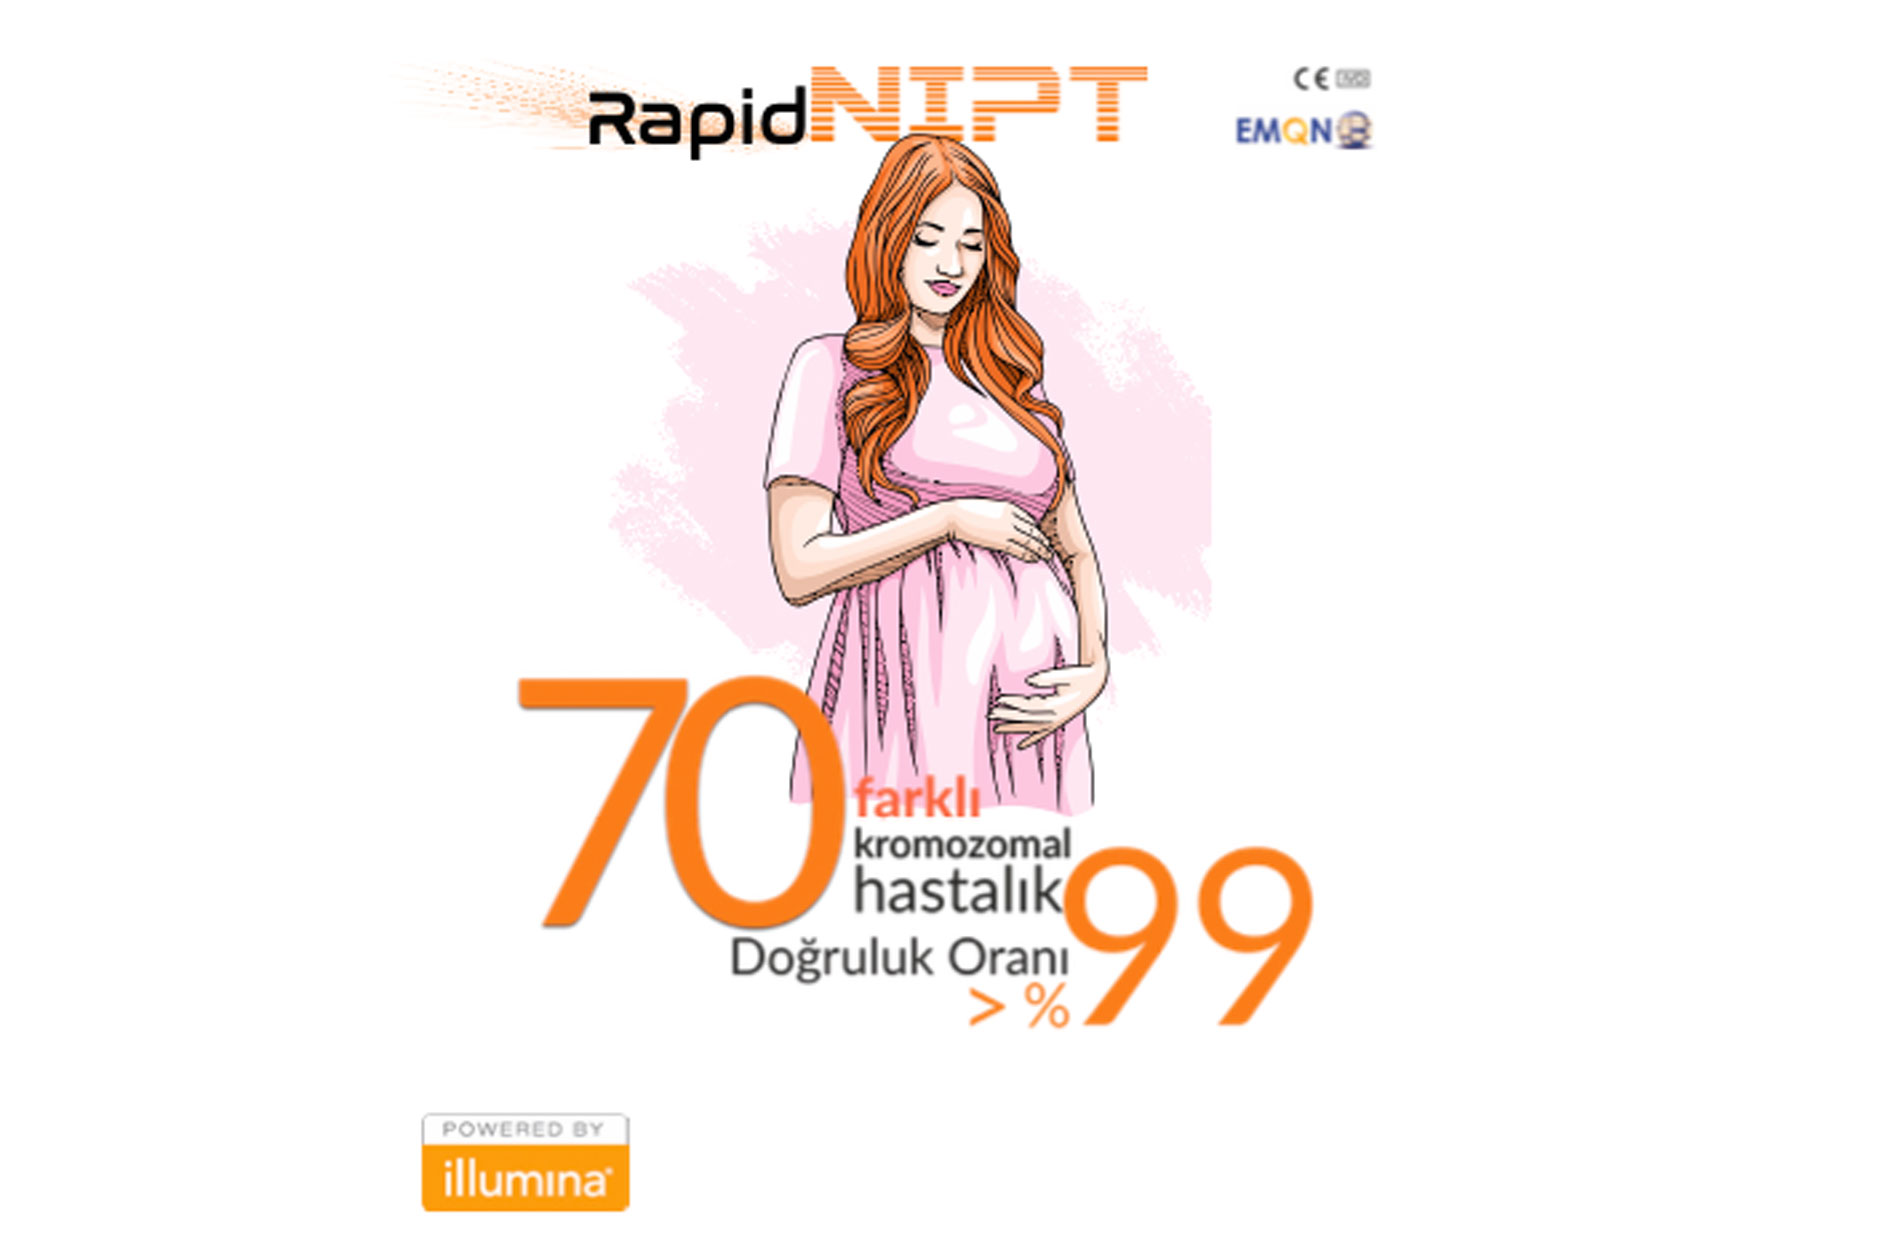 RapidNIPT, Genoks Genetik Hastalıklar Değerlendirme Merkezi'nin NIPT markasıdır. Bu test, gebelik sırasında anne adayının kanından alınan örnek üzerinden fetal genetik bilgileri değerlendirir. İllumina teknolojisi ile hızlı ve güvenilir sonuçlar sunar.